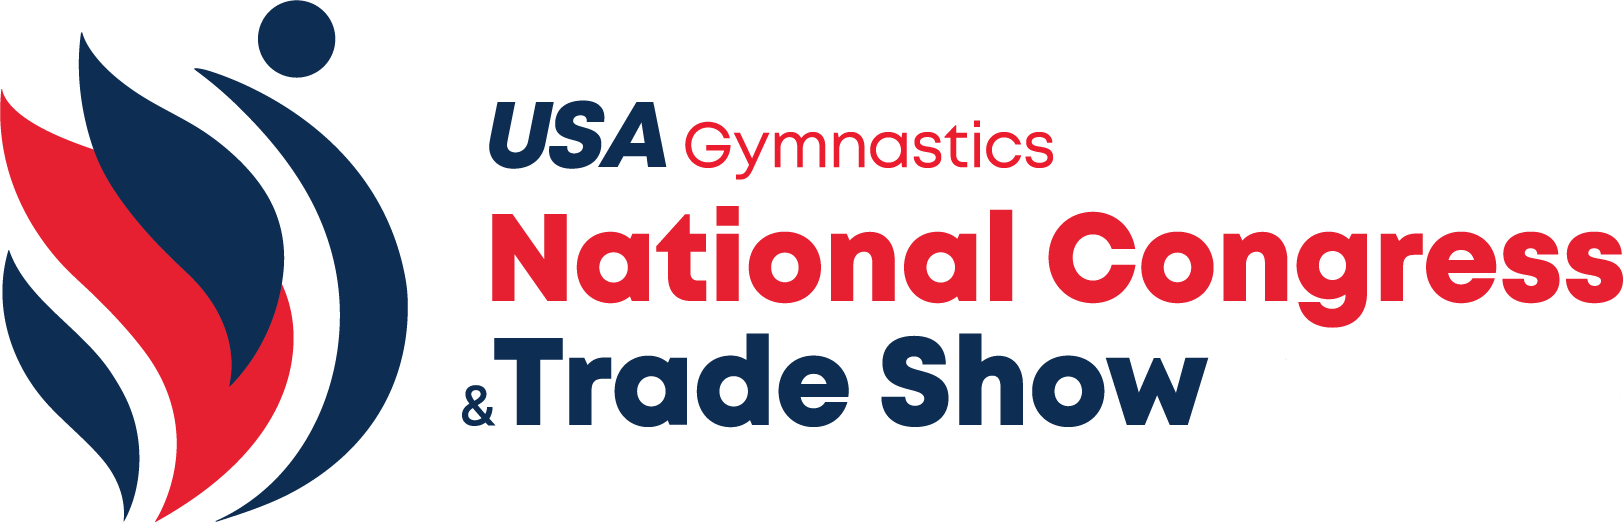 USA Gymnastics National Congress